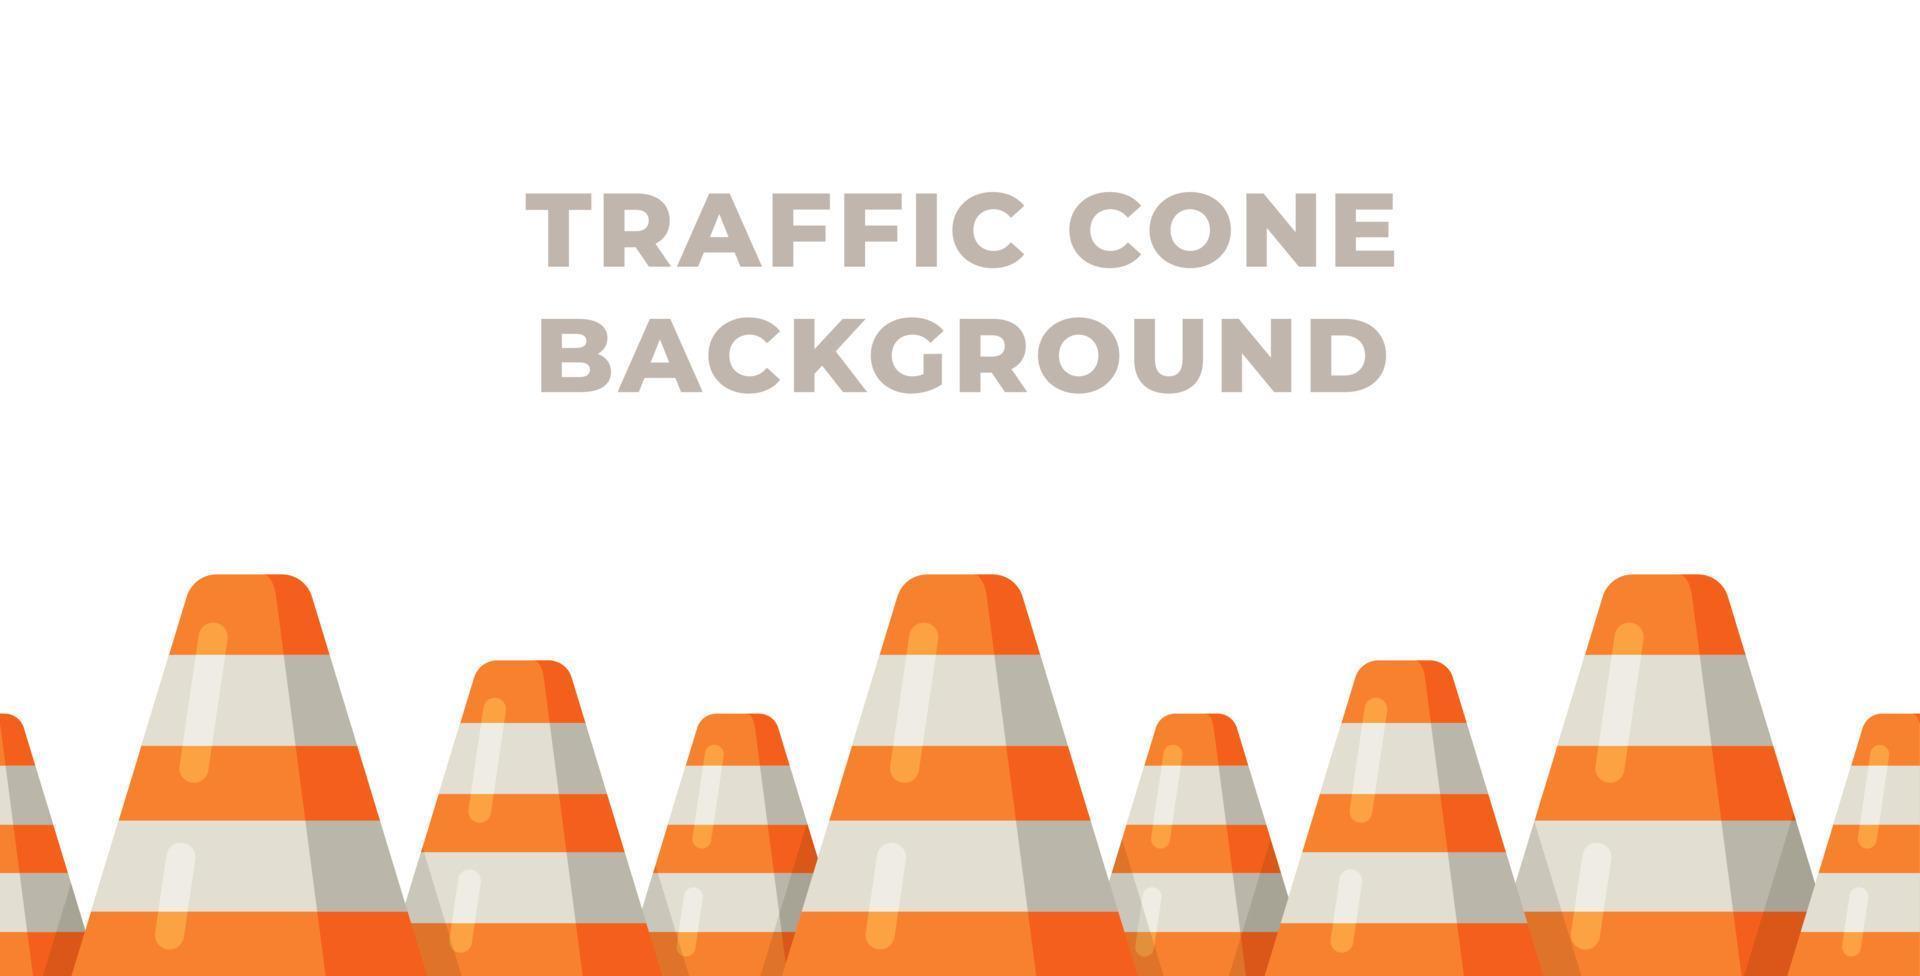 ilustração em vetor de fundo de cone de trânsito. cones de trânsito em fundo branco.